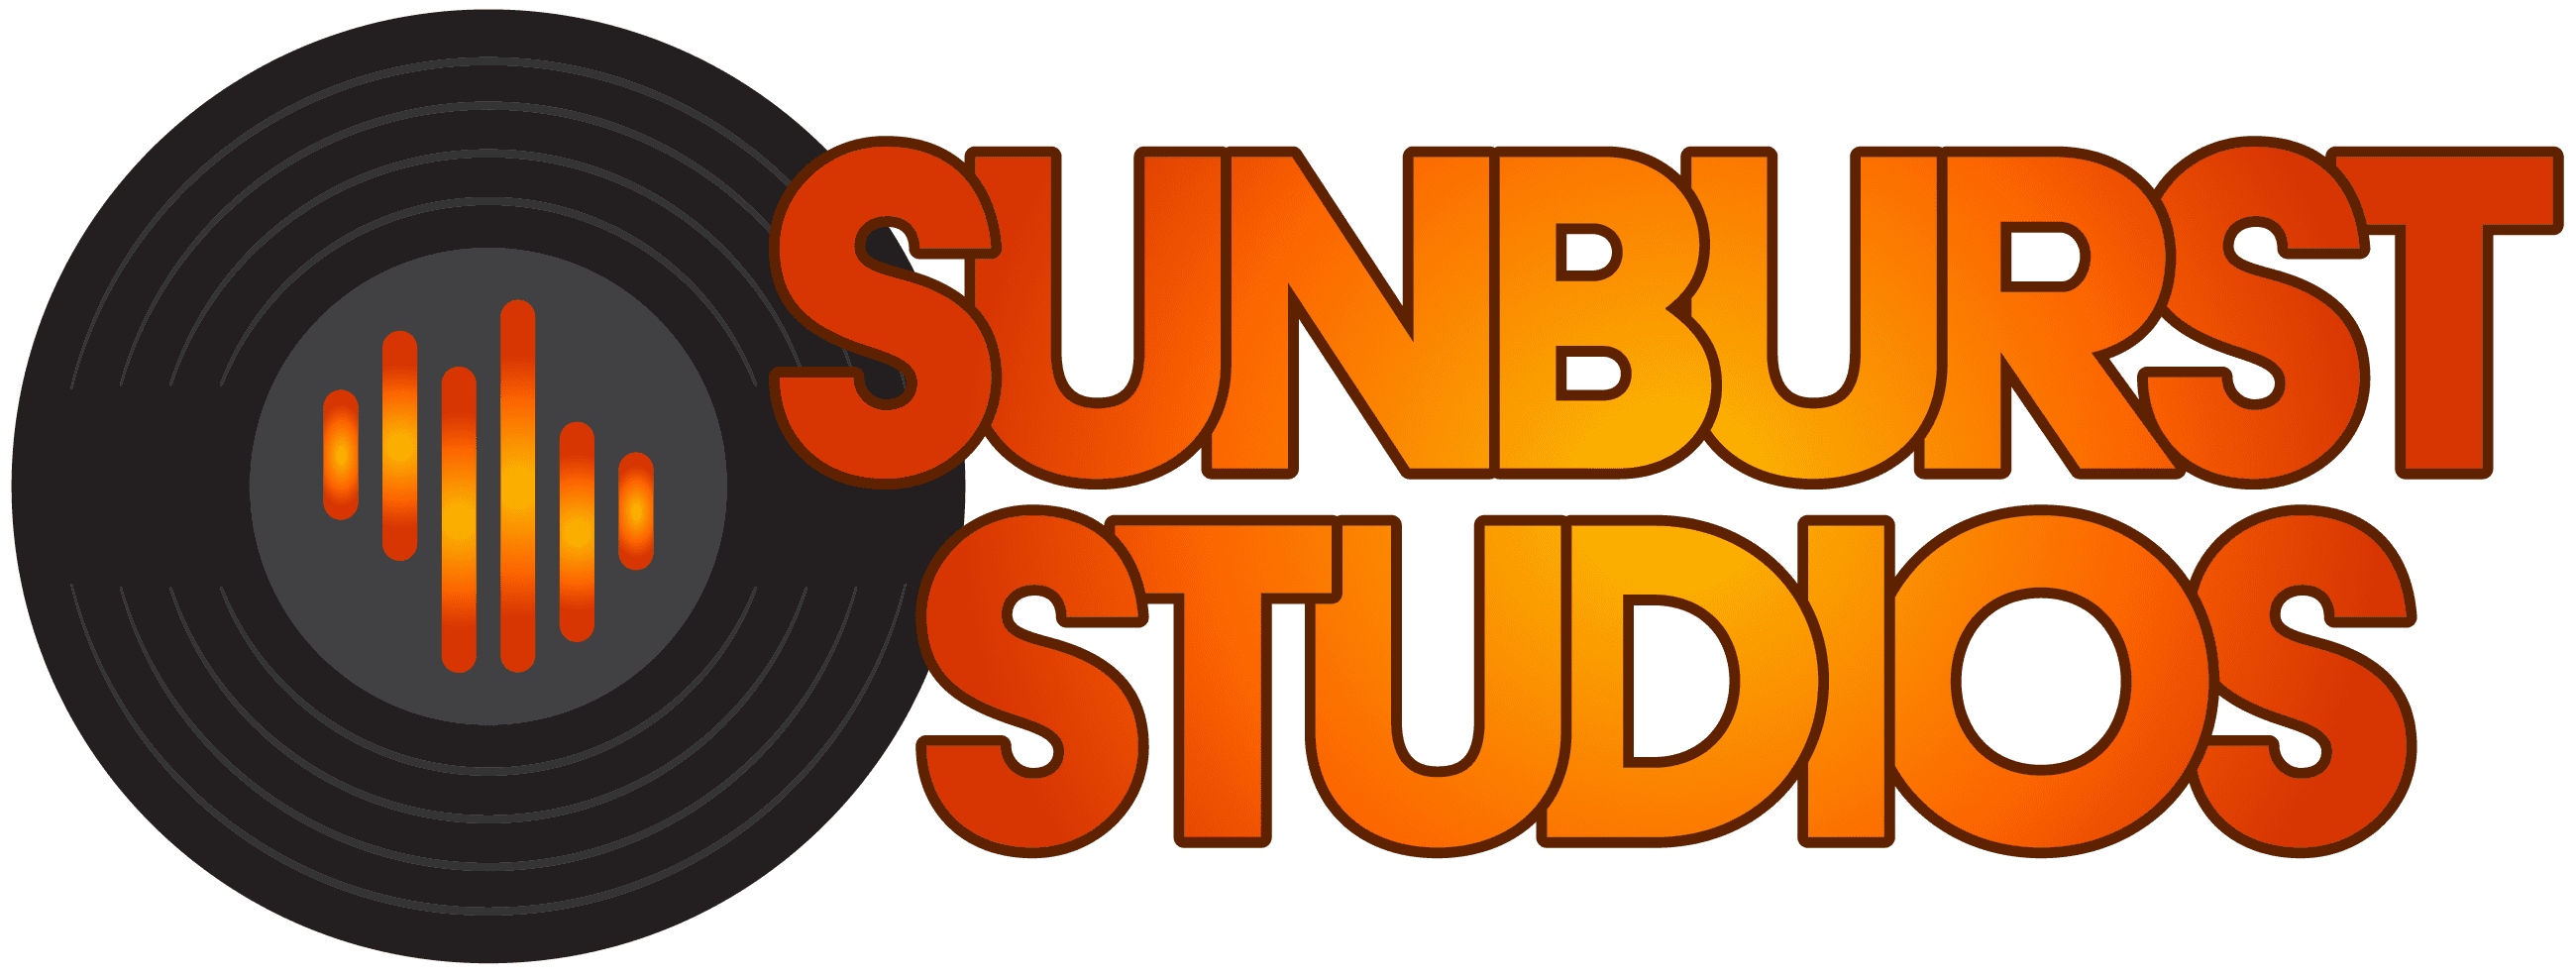 Sunburst Studios